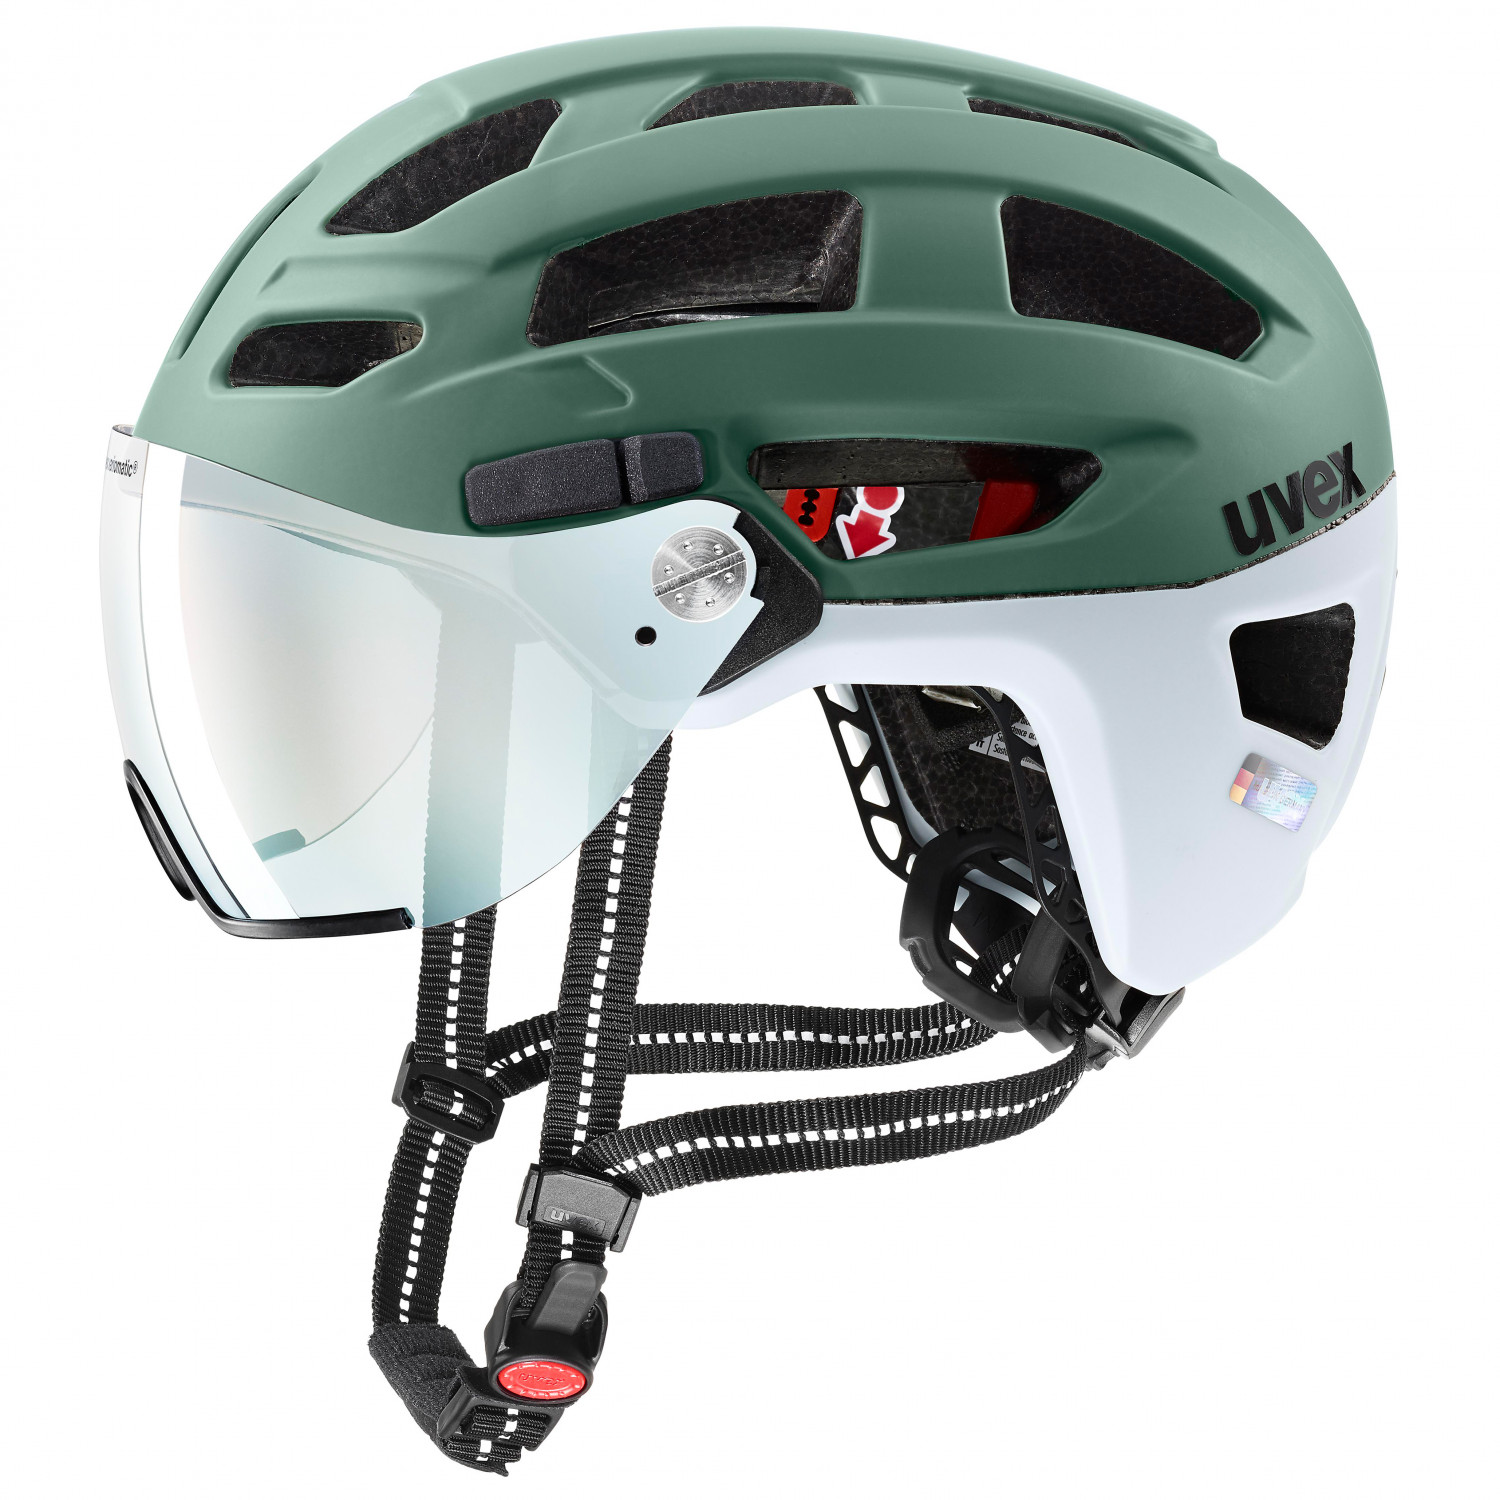 Велосипедный шлем Uvex Finale Visor Vario, цвет Moss Green/Cloud Matt